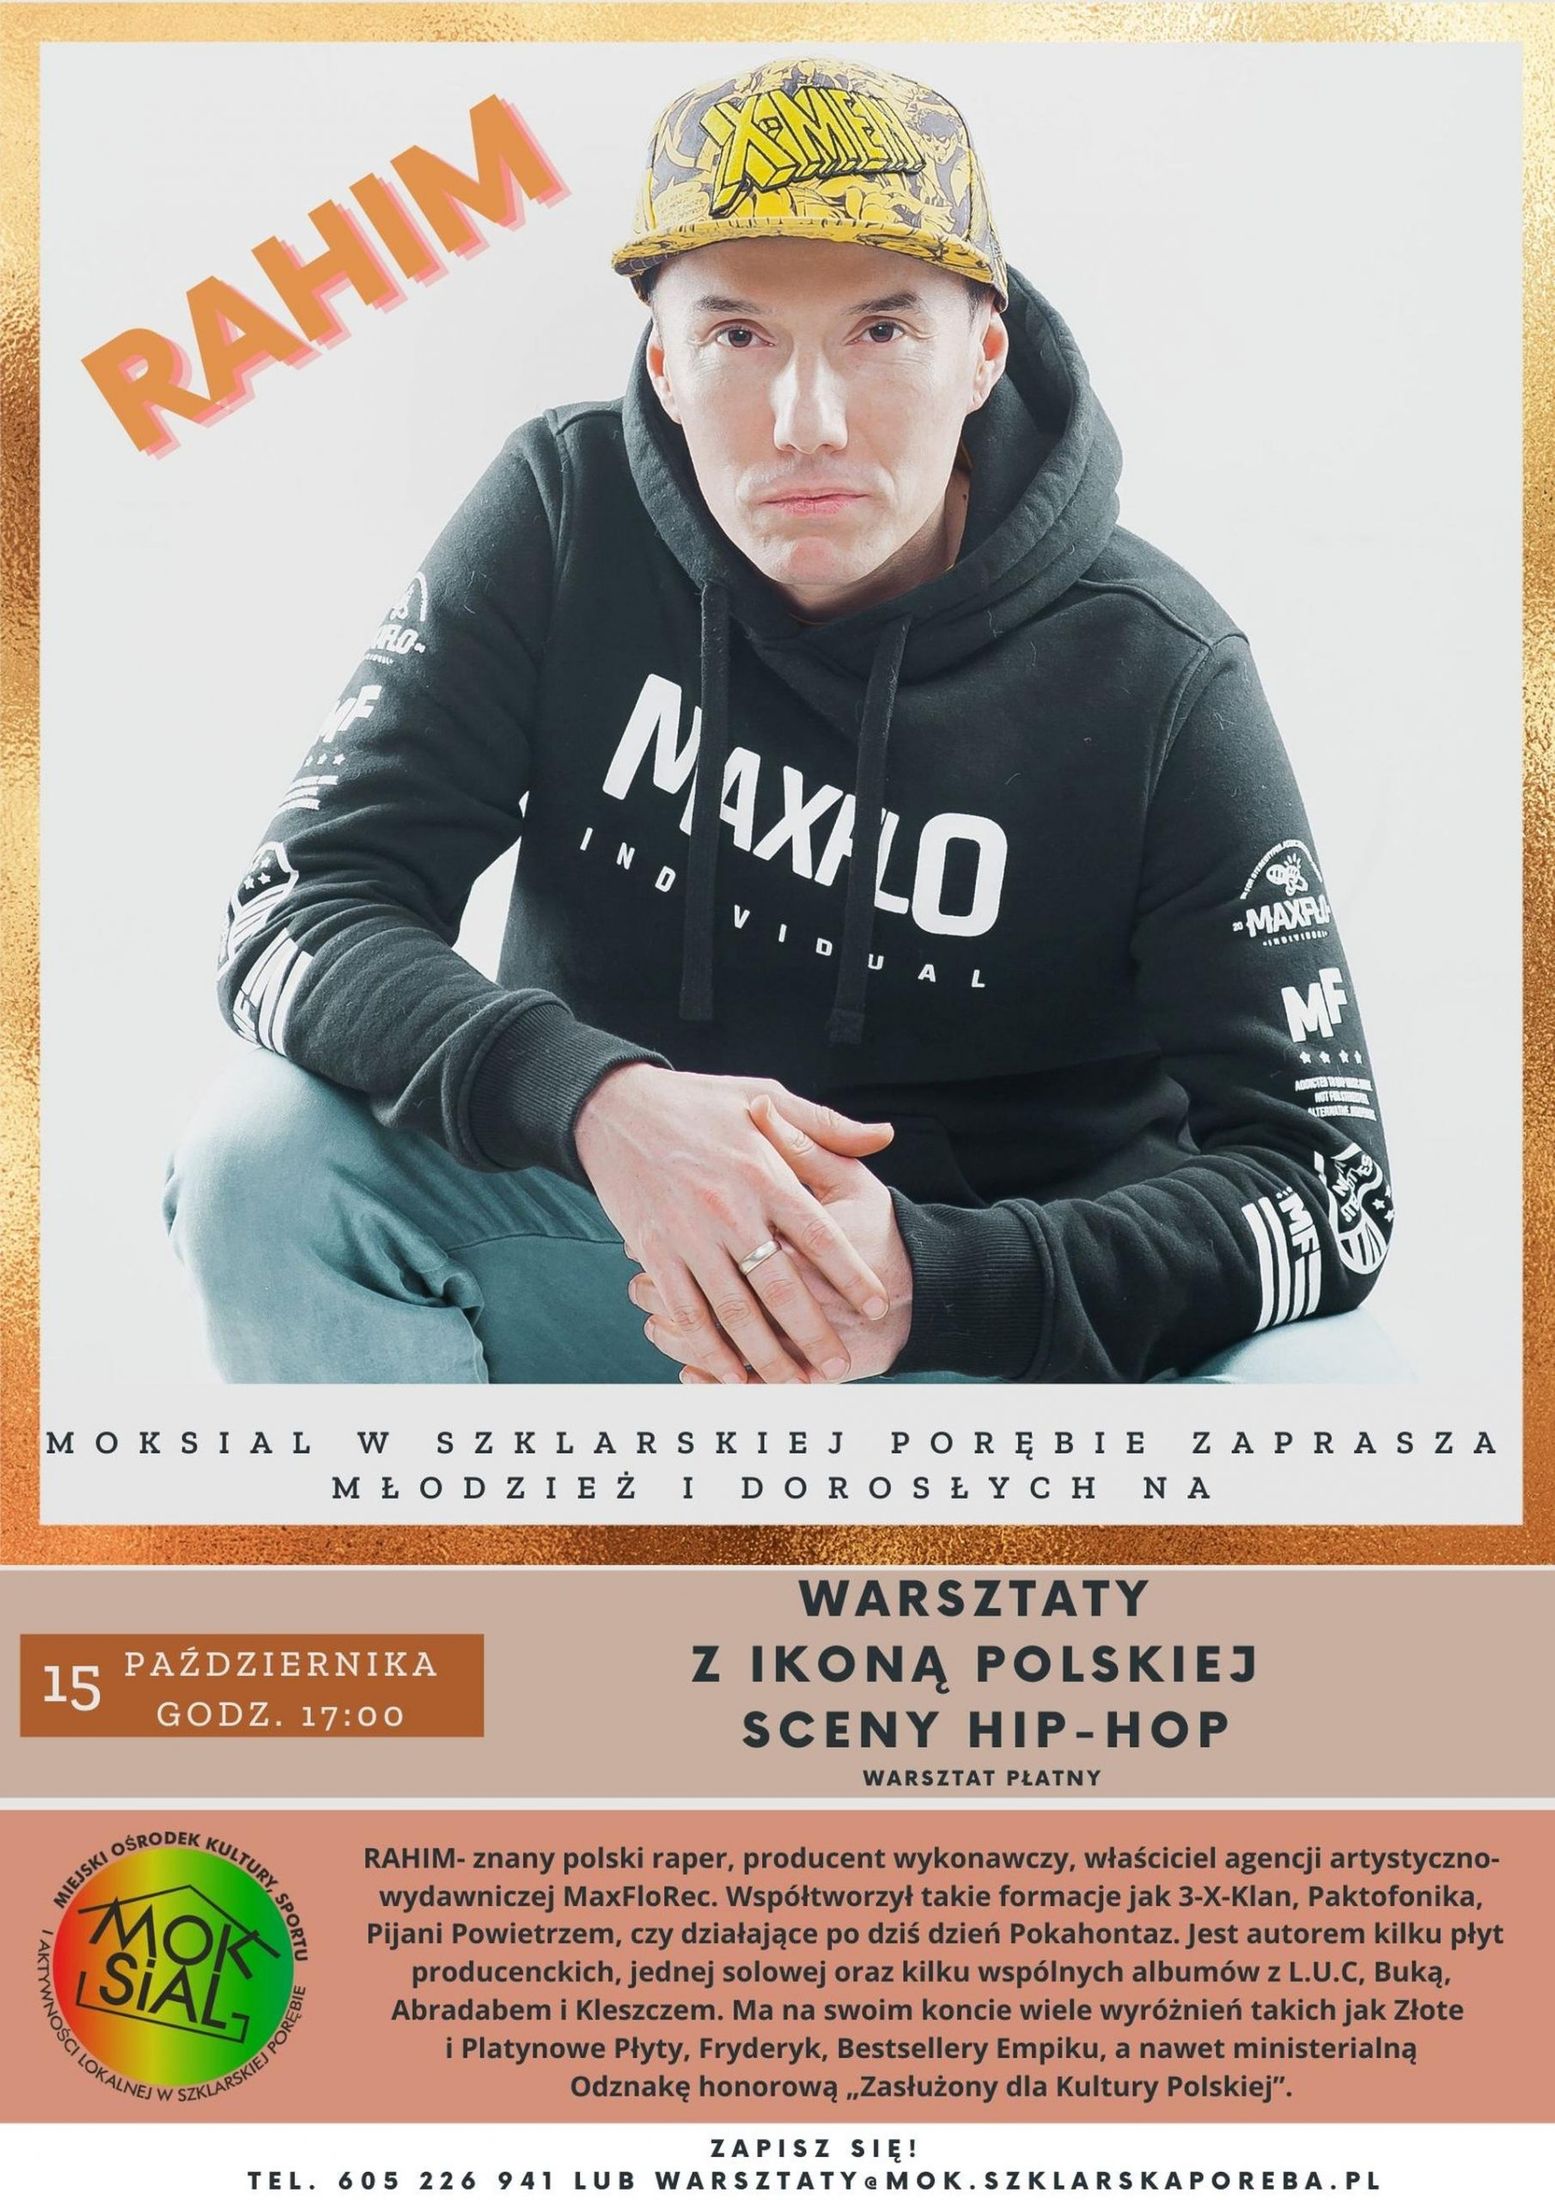 Hiphopowe warsztaty muzyczne z Rahimem 15 października 2021 w MOKSiAL-u